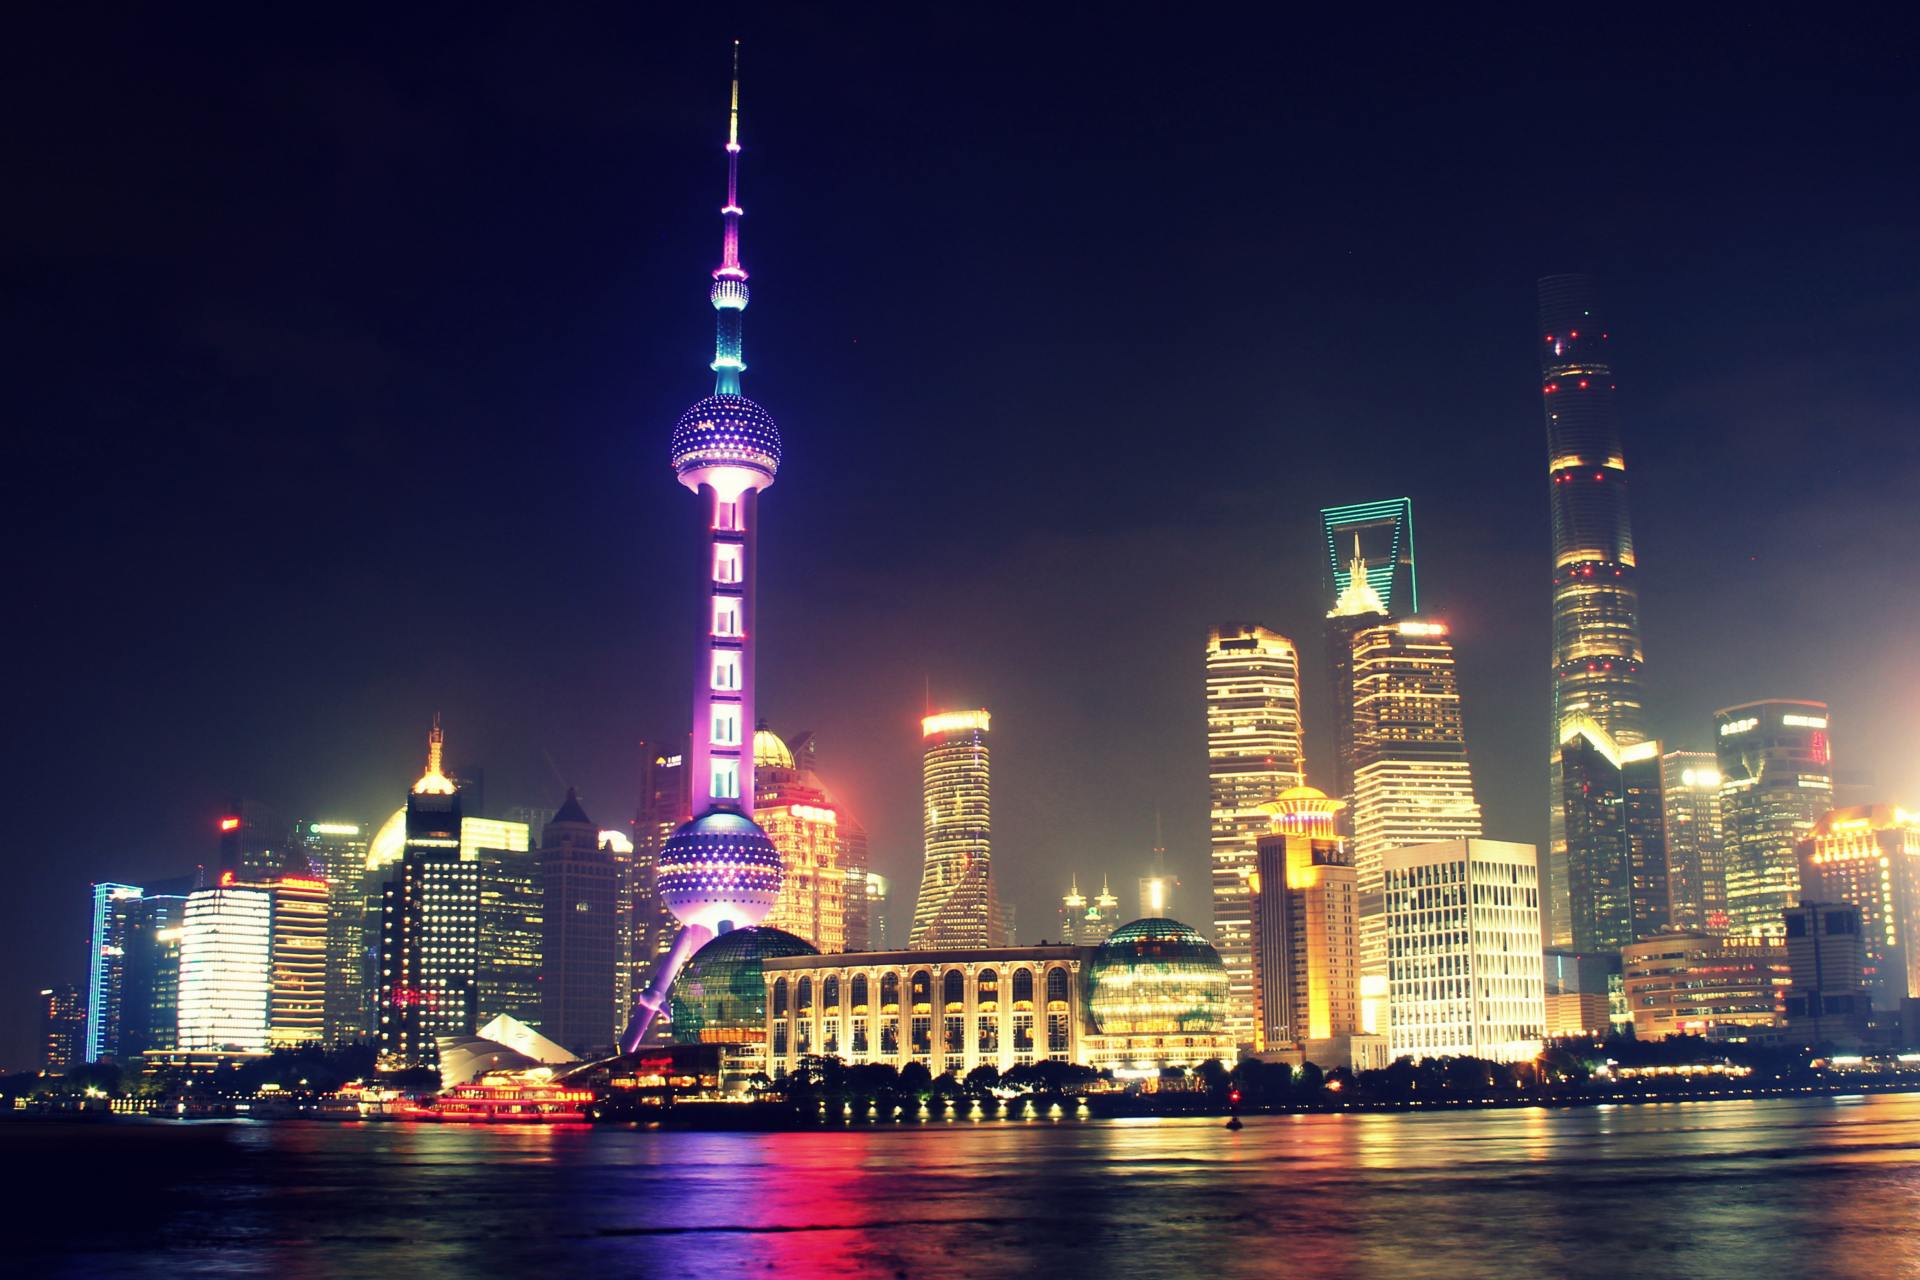 上海东方明珠塔是上海市的地标性建筑之一,建于1991年,位于黄浦江畔的